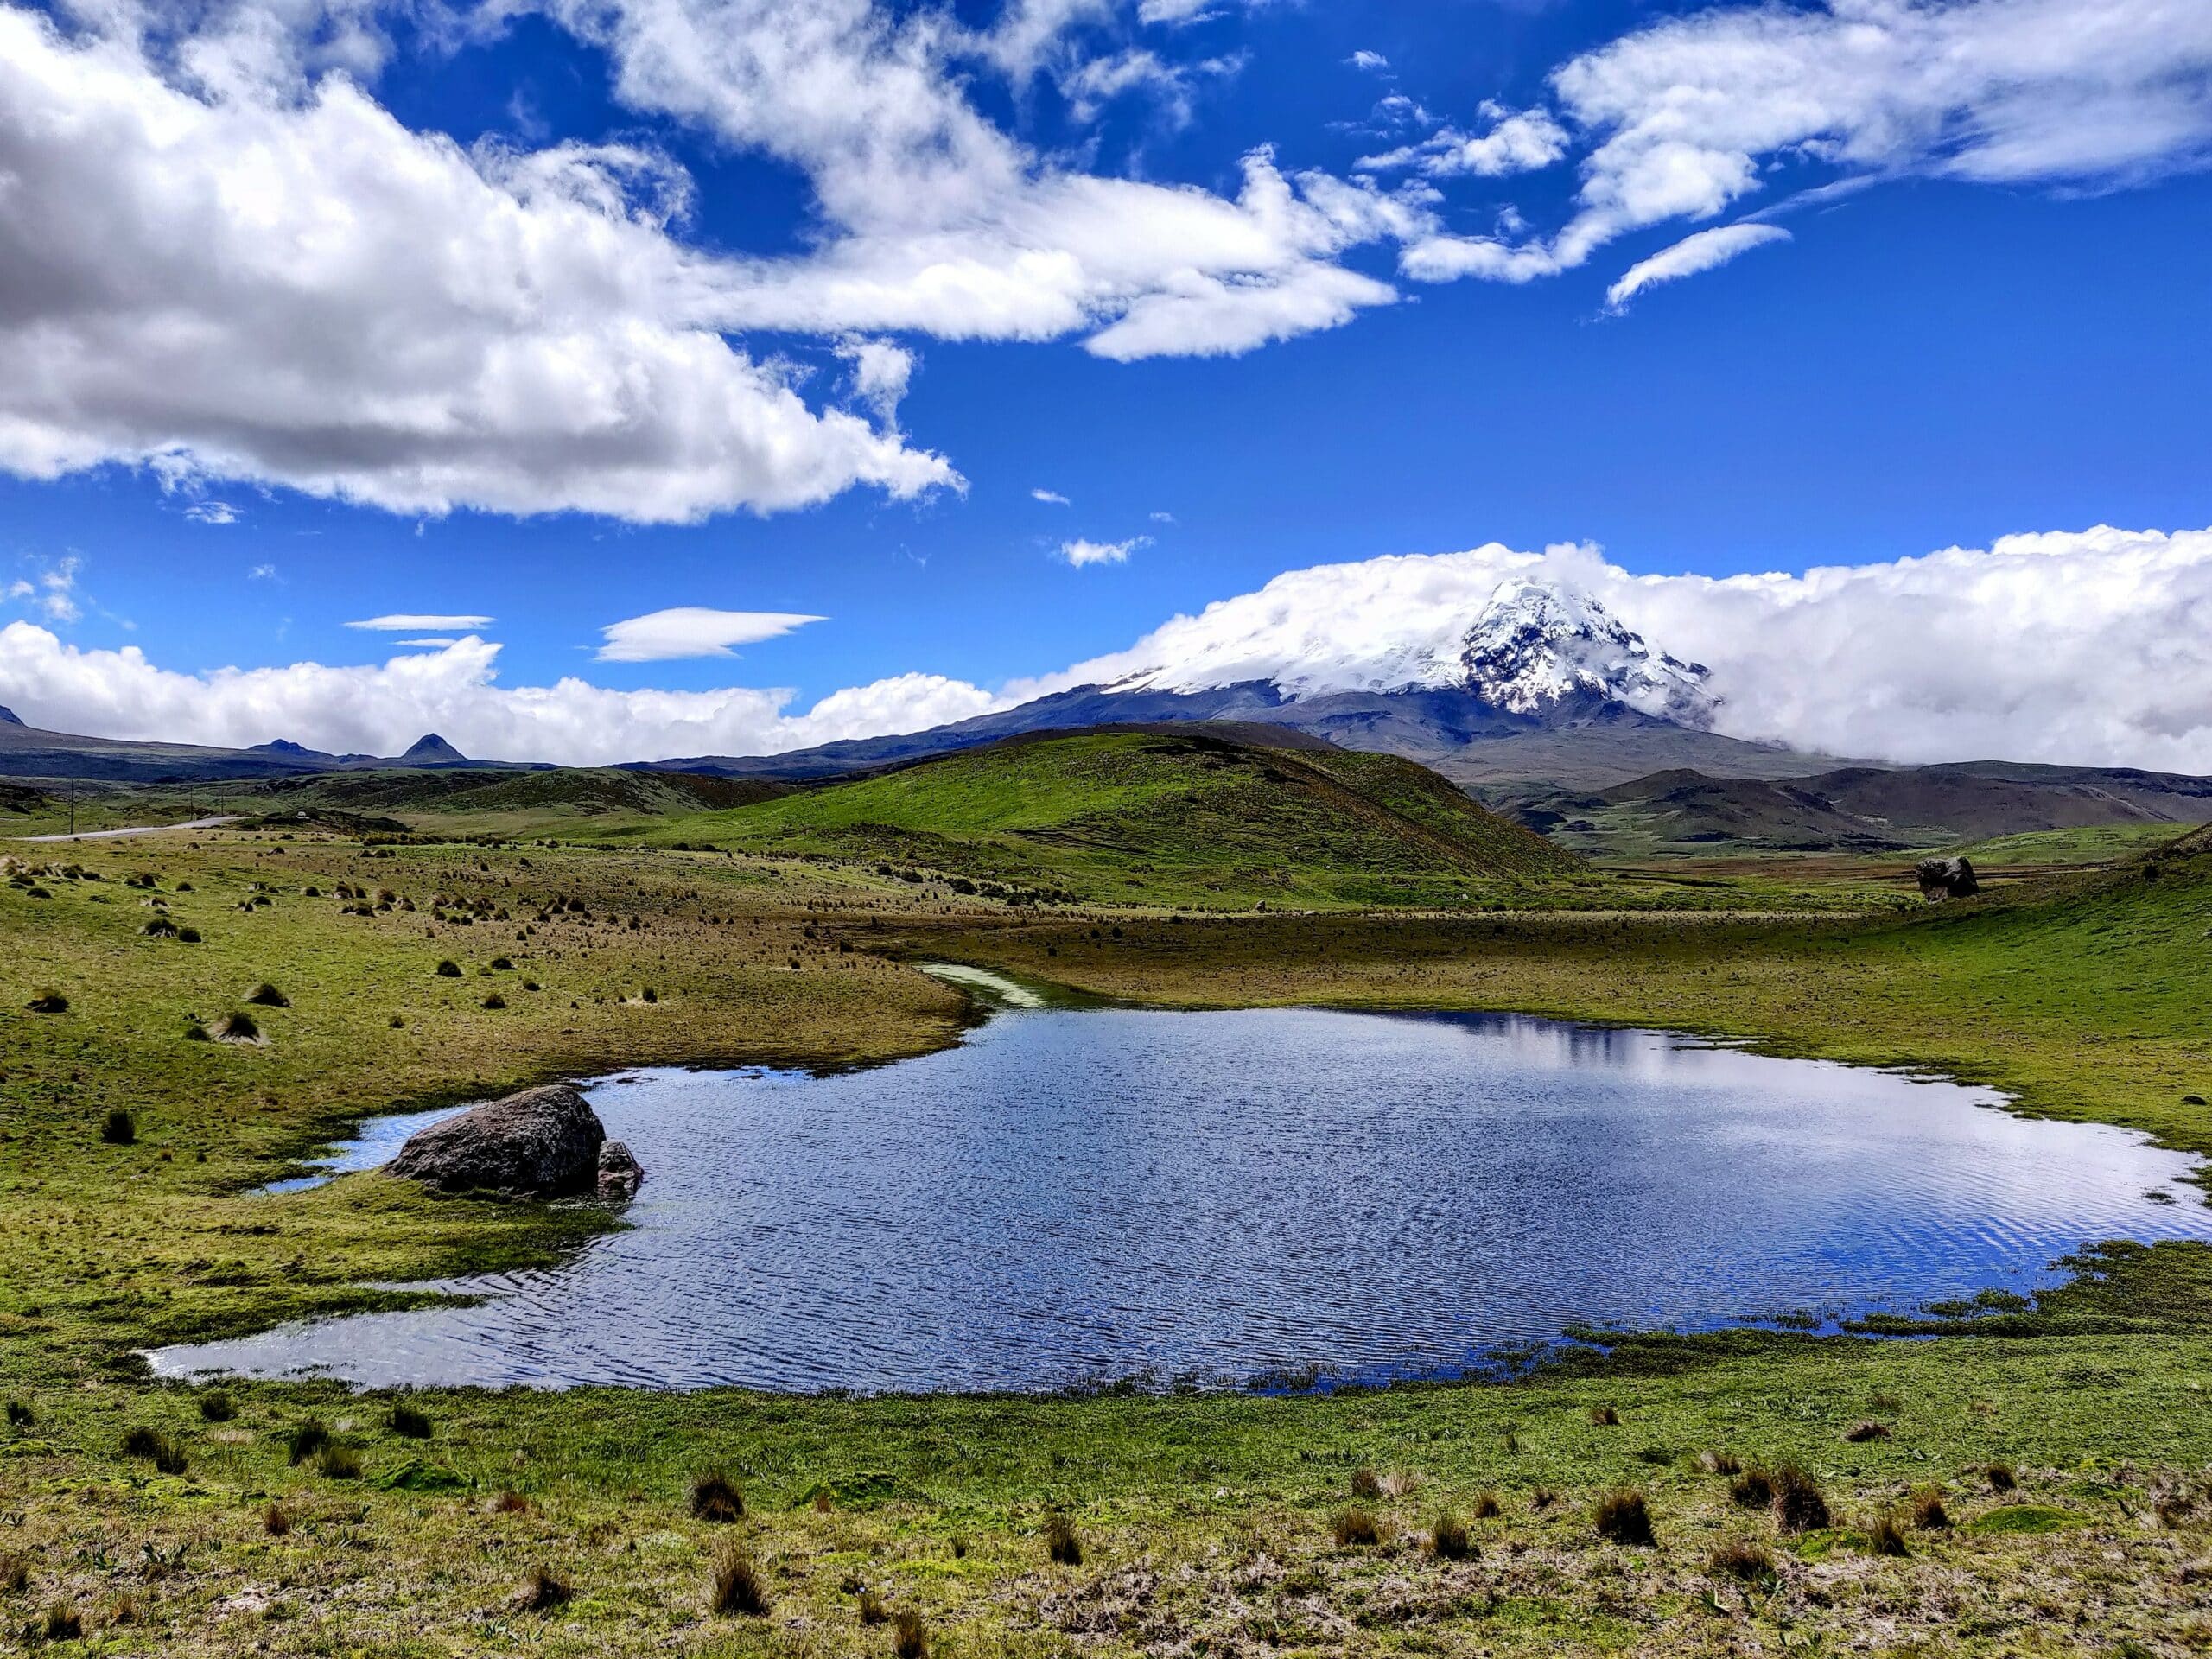 Vista da região do Antisana, Equador com lago, vegetação em volta, montanhas e vulcão ao fundo, com céu claro e nuvens brancas. Representa chip celular Equador